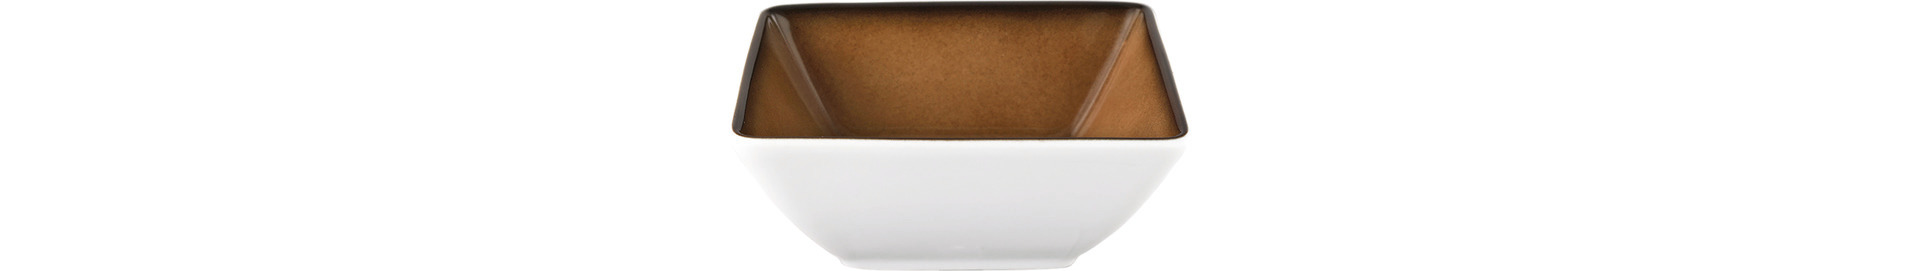 Bowl eckig 150 x 150 mm / 0,60 l caramel -5140